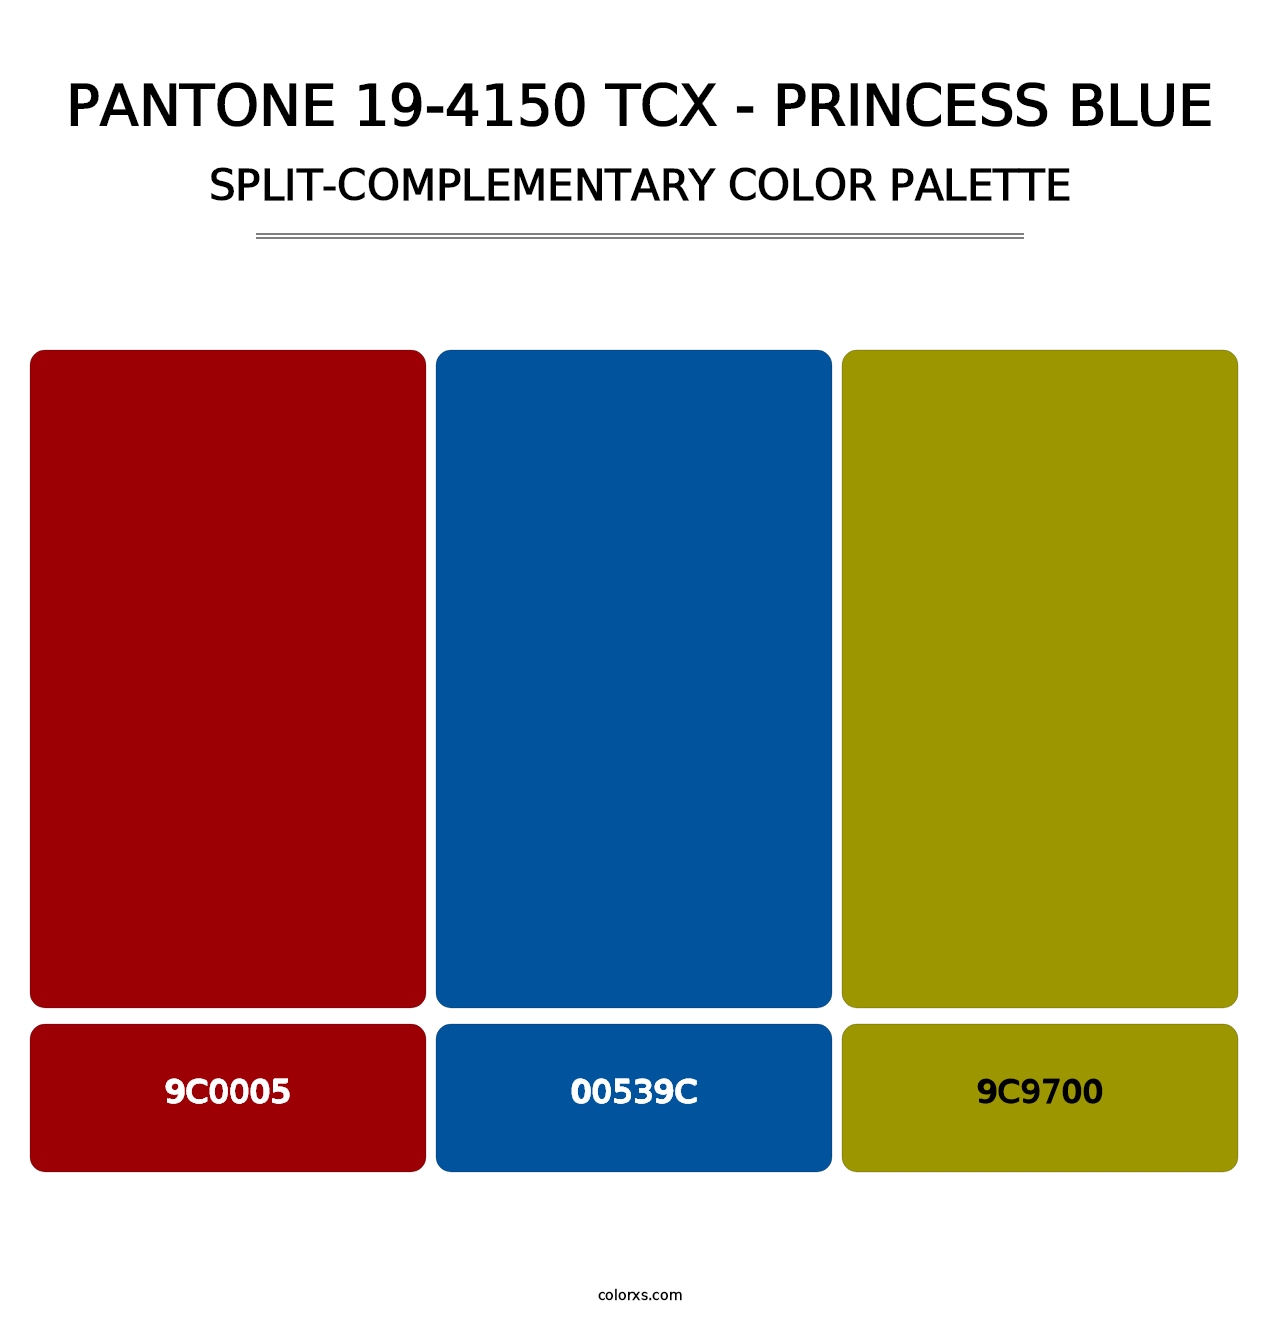 PANTONE 19-4150 TCX - Princess Blue - Split-Complementary Color Palette